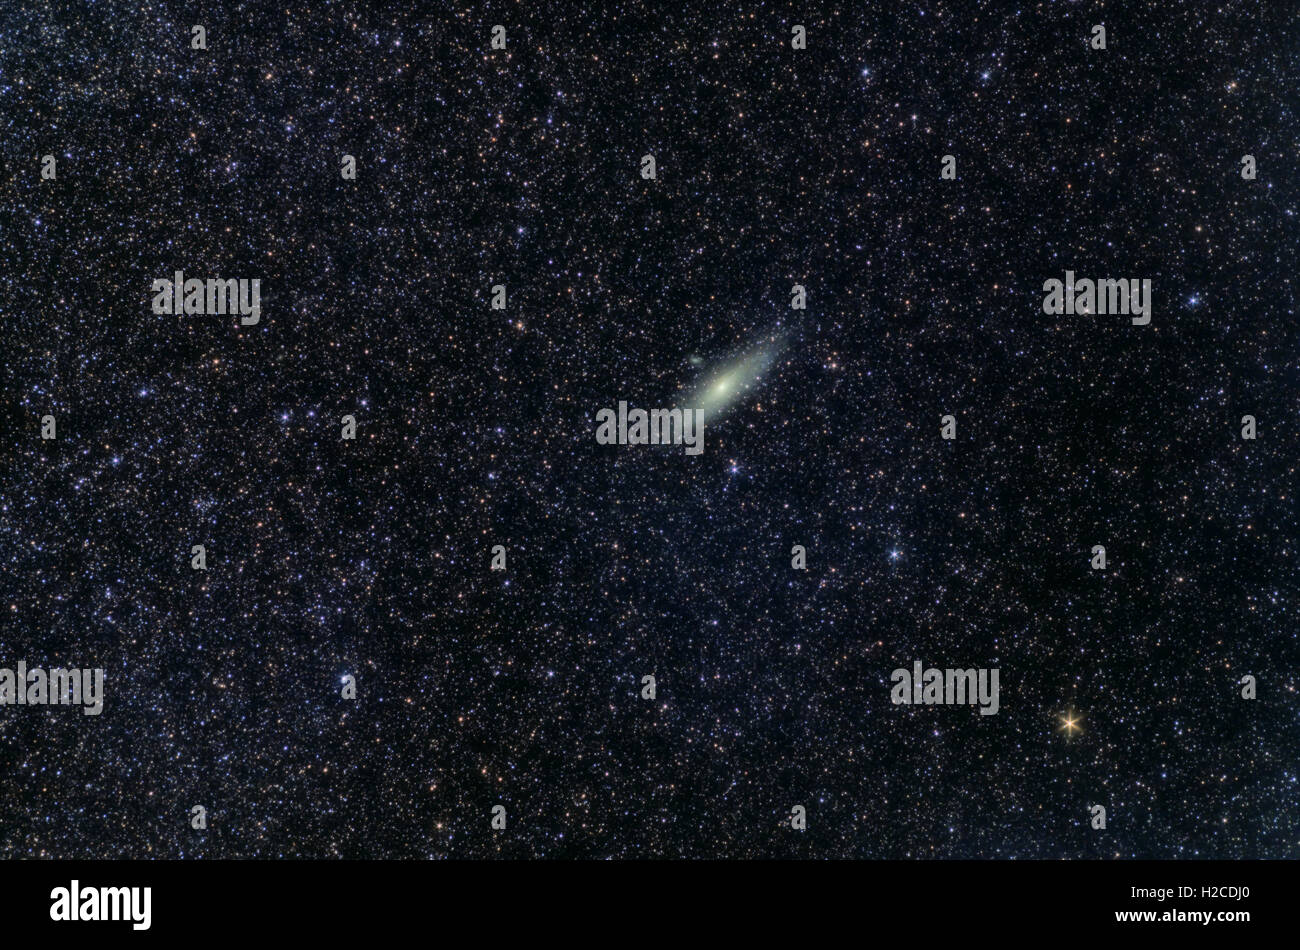 L'univers de l'espace Astronomie photo : la galaxie d'Andromède (M31 ou NGC224) avec des stars en avant-plan. L'exposition totale de 18 minutes. Banque D'Images